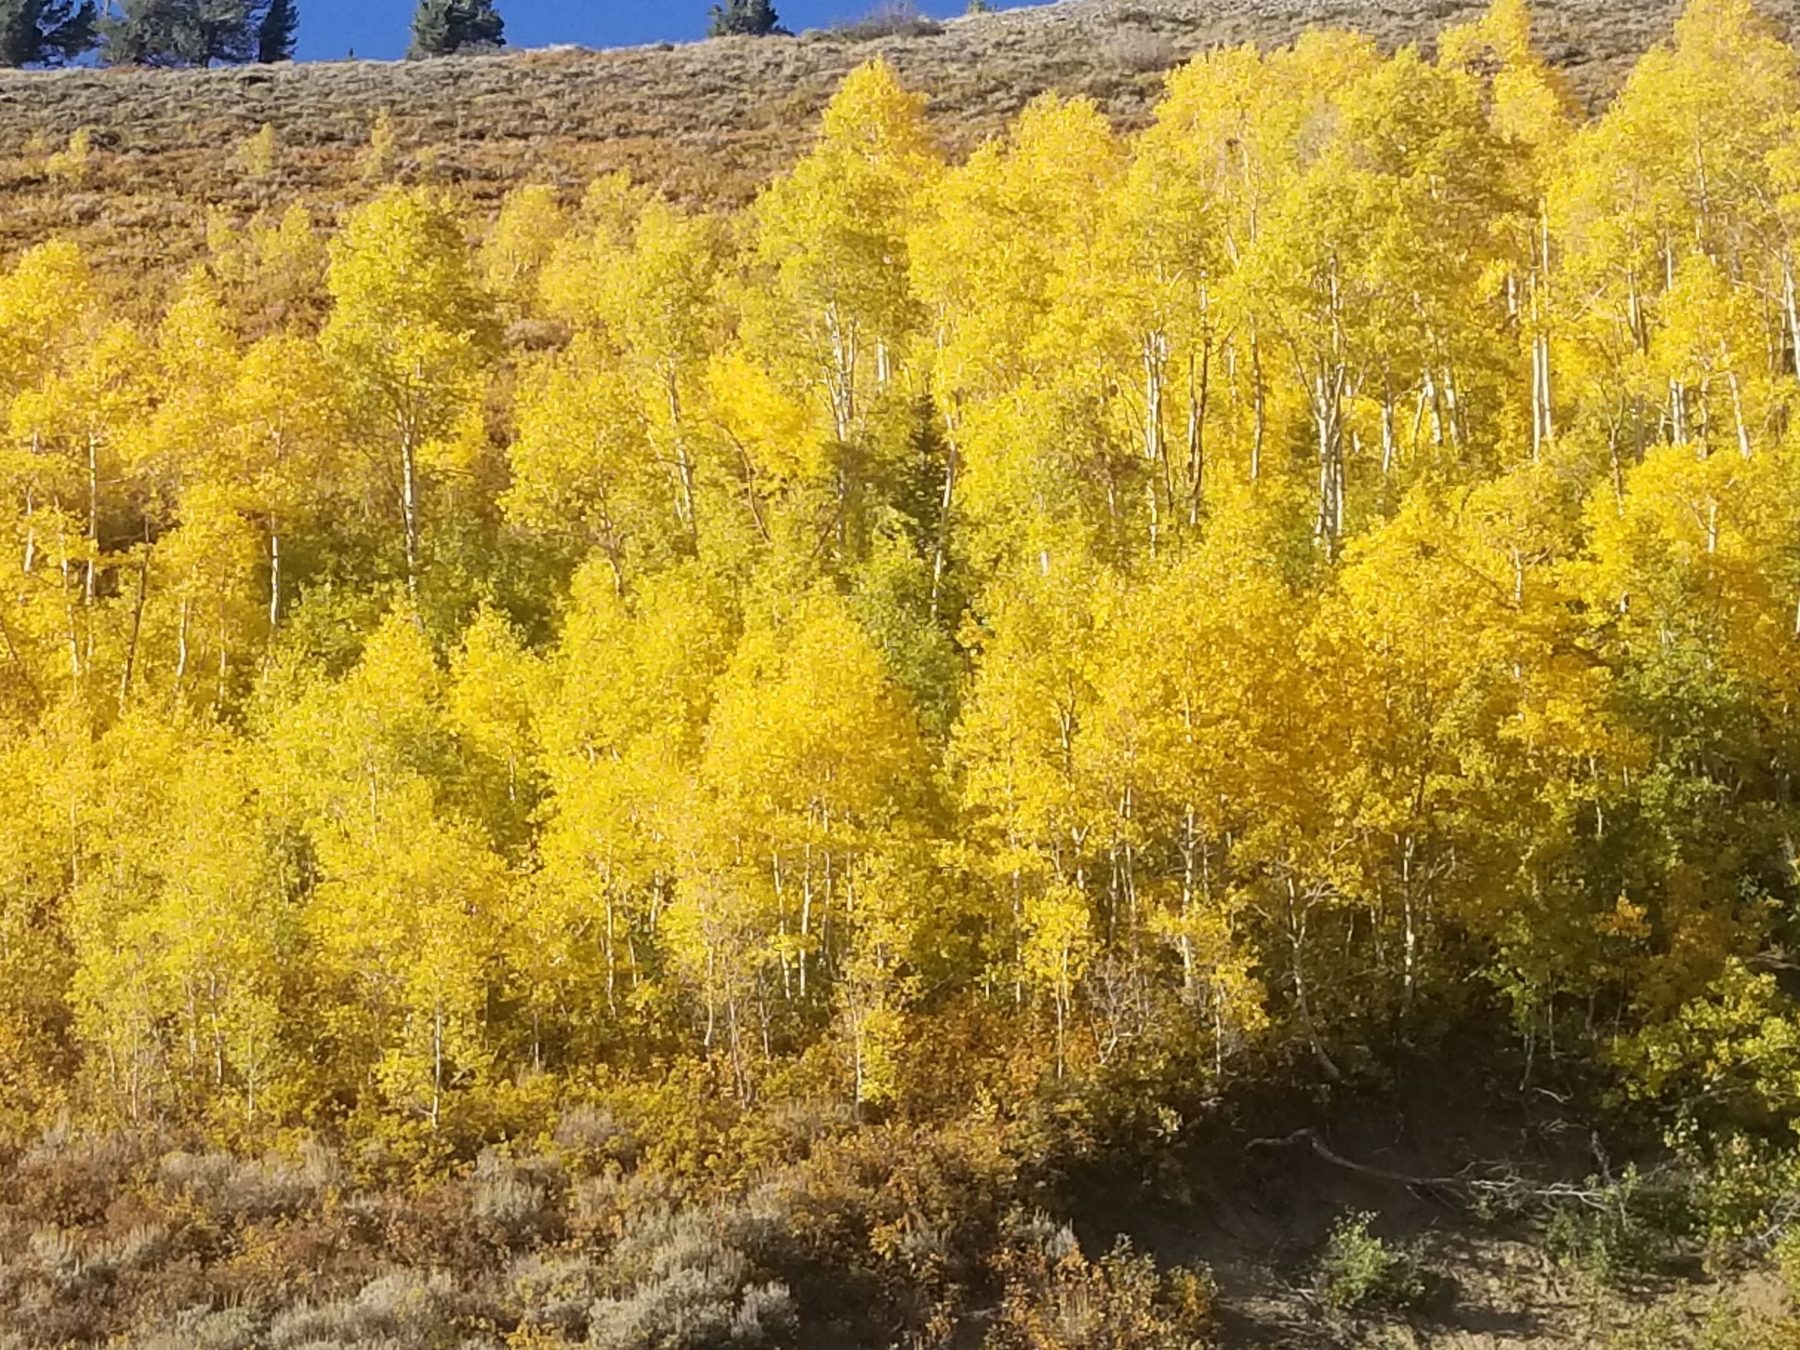 Fall colors in Utah